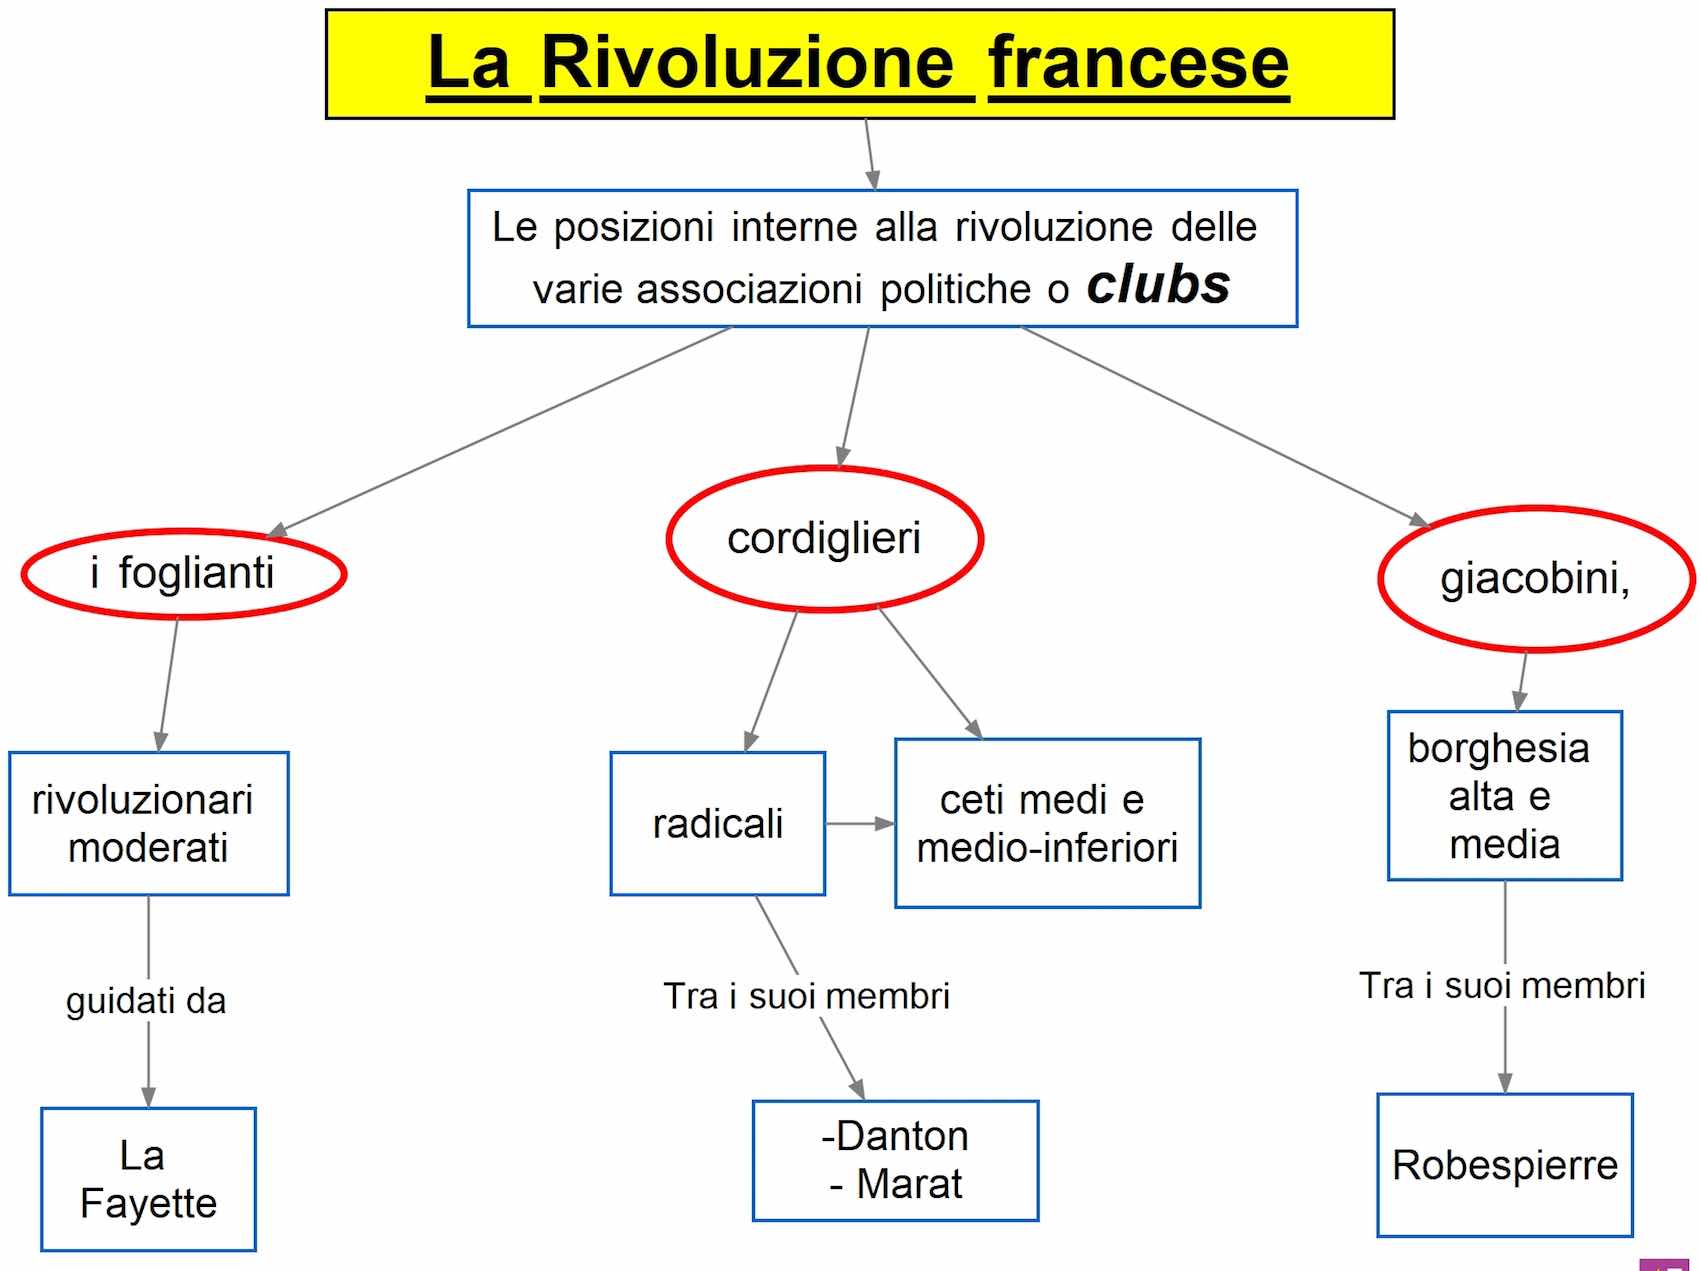 Rivoluzione francese - clubs politici